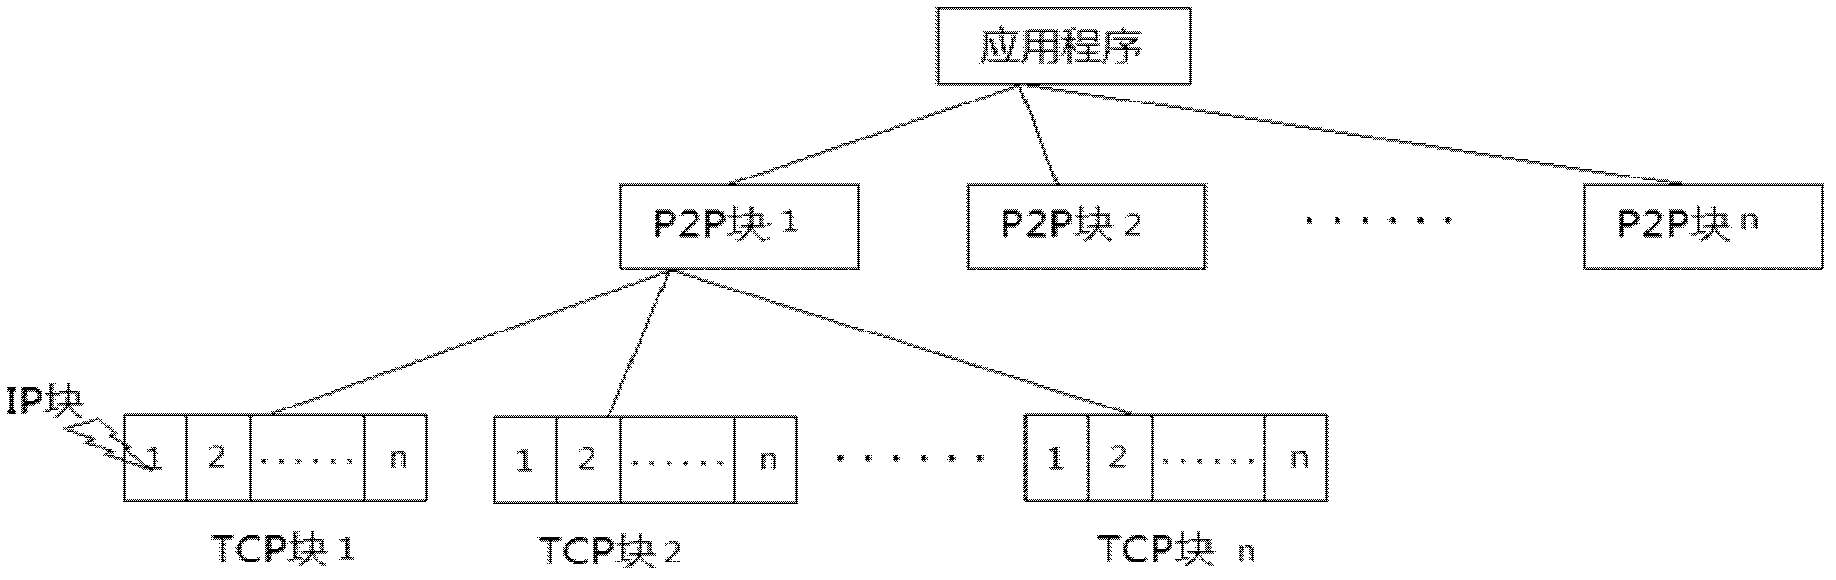 Block-based virus detection method in P2P (peer-to-peer) network